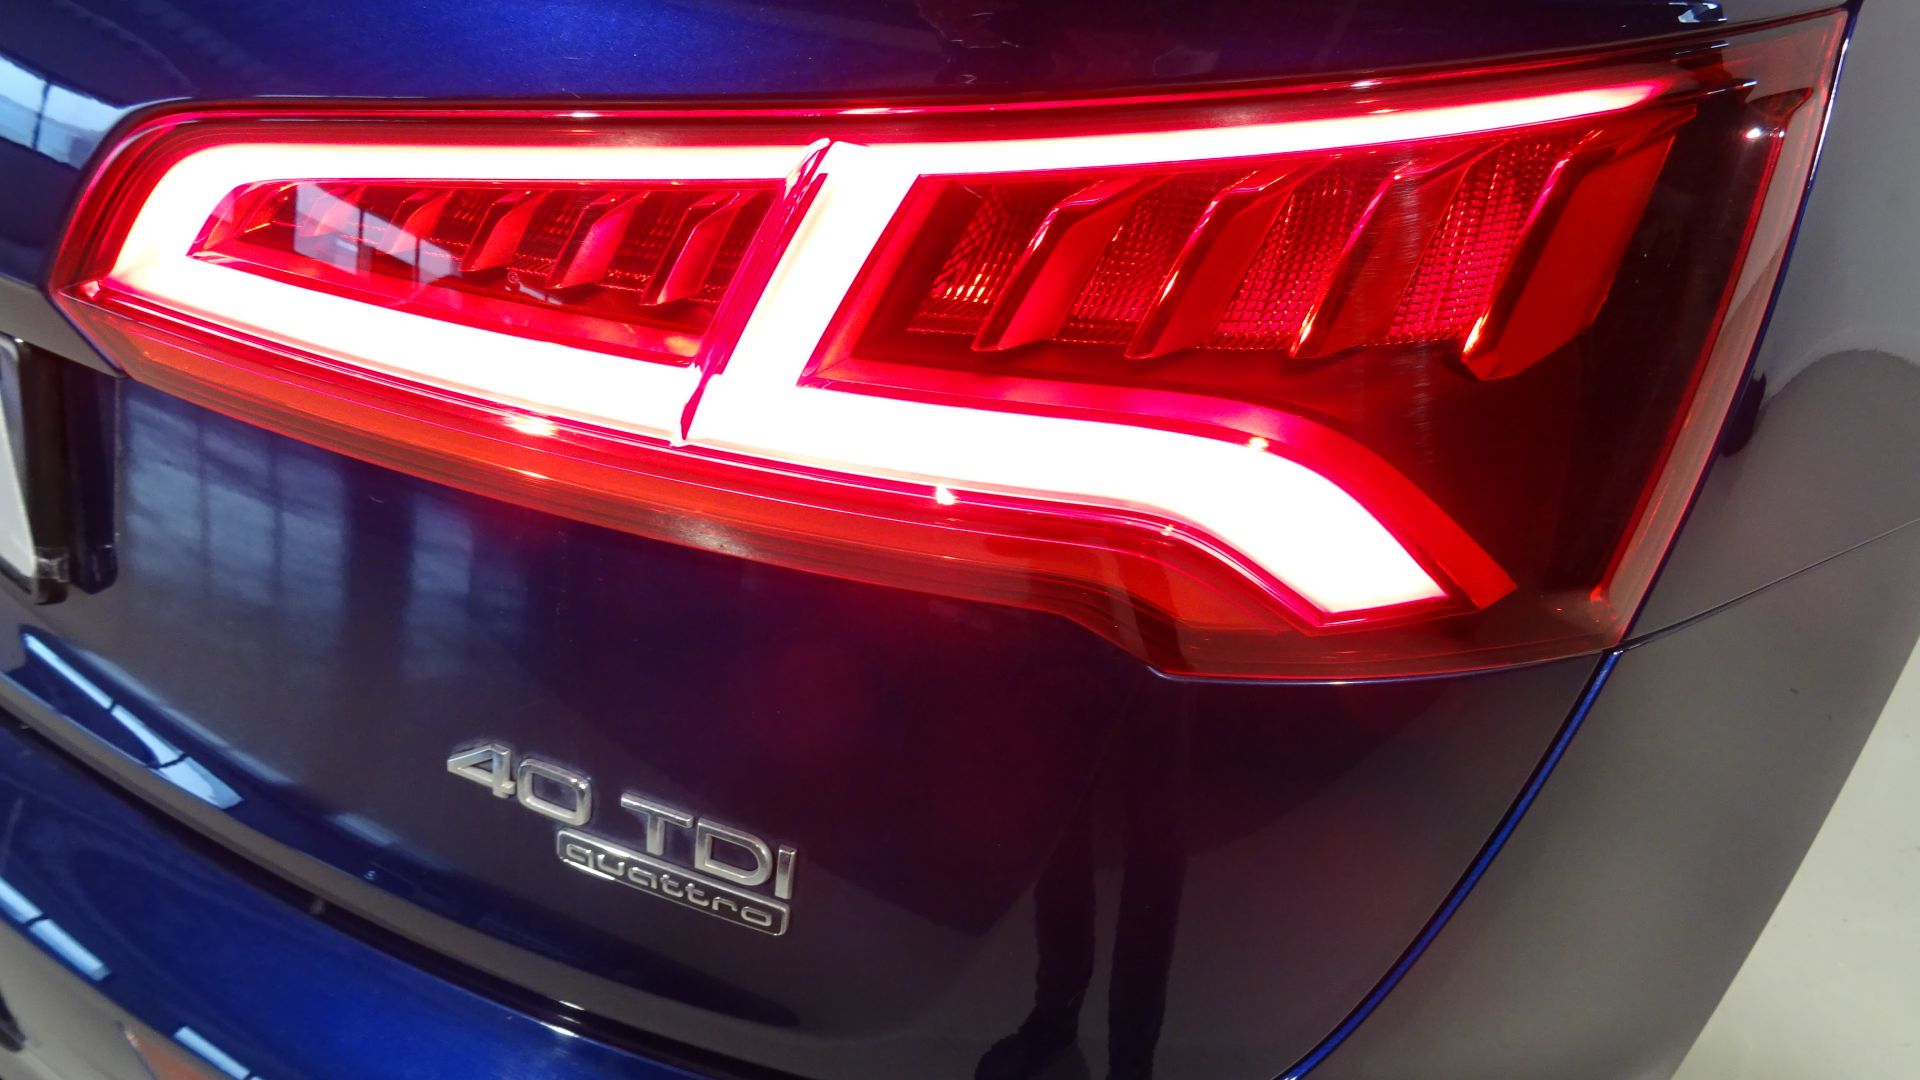 Audi Q5 S line 2.0 TDI 140kW quattro S tronic